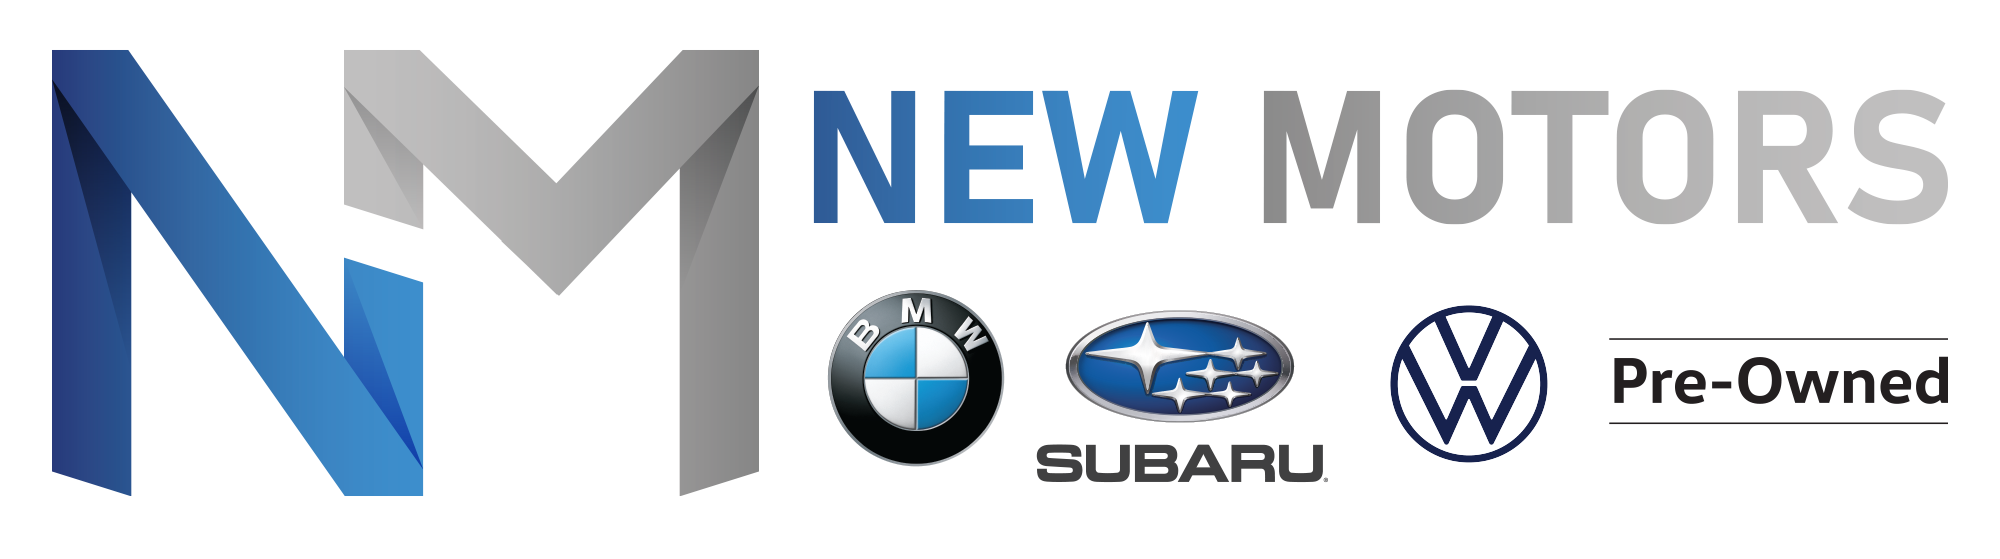 New Motors Subaru